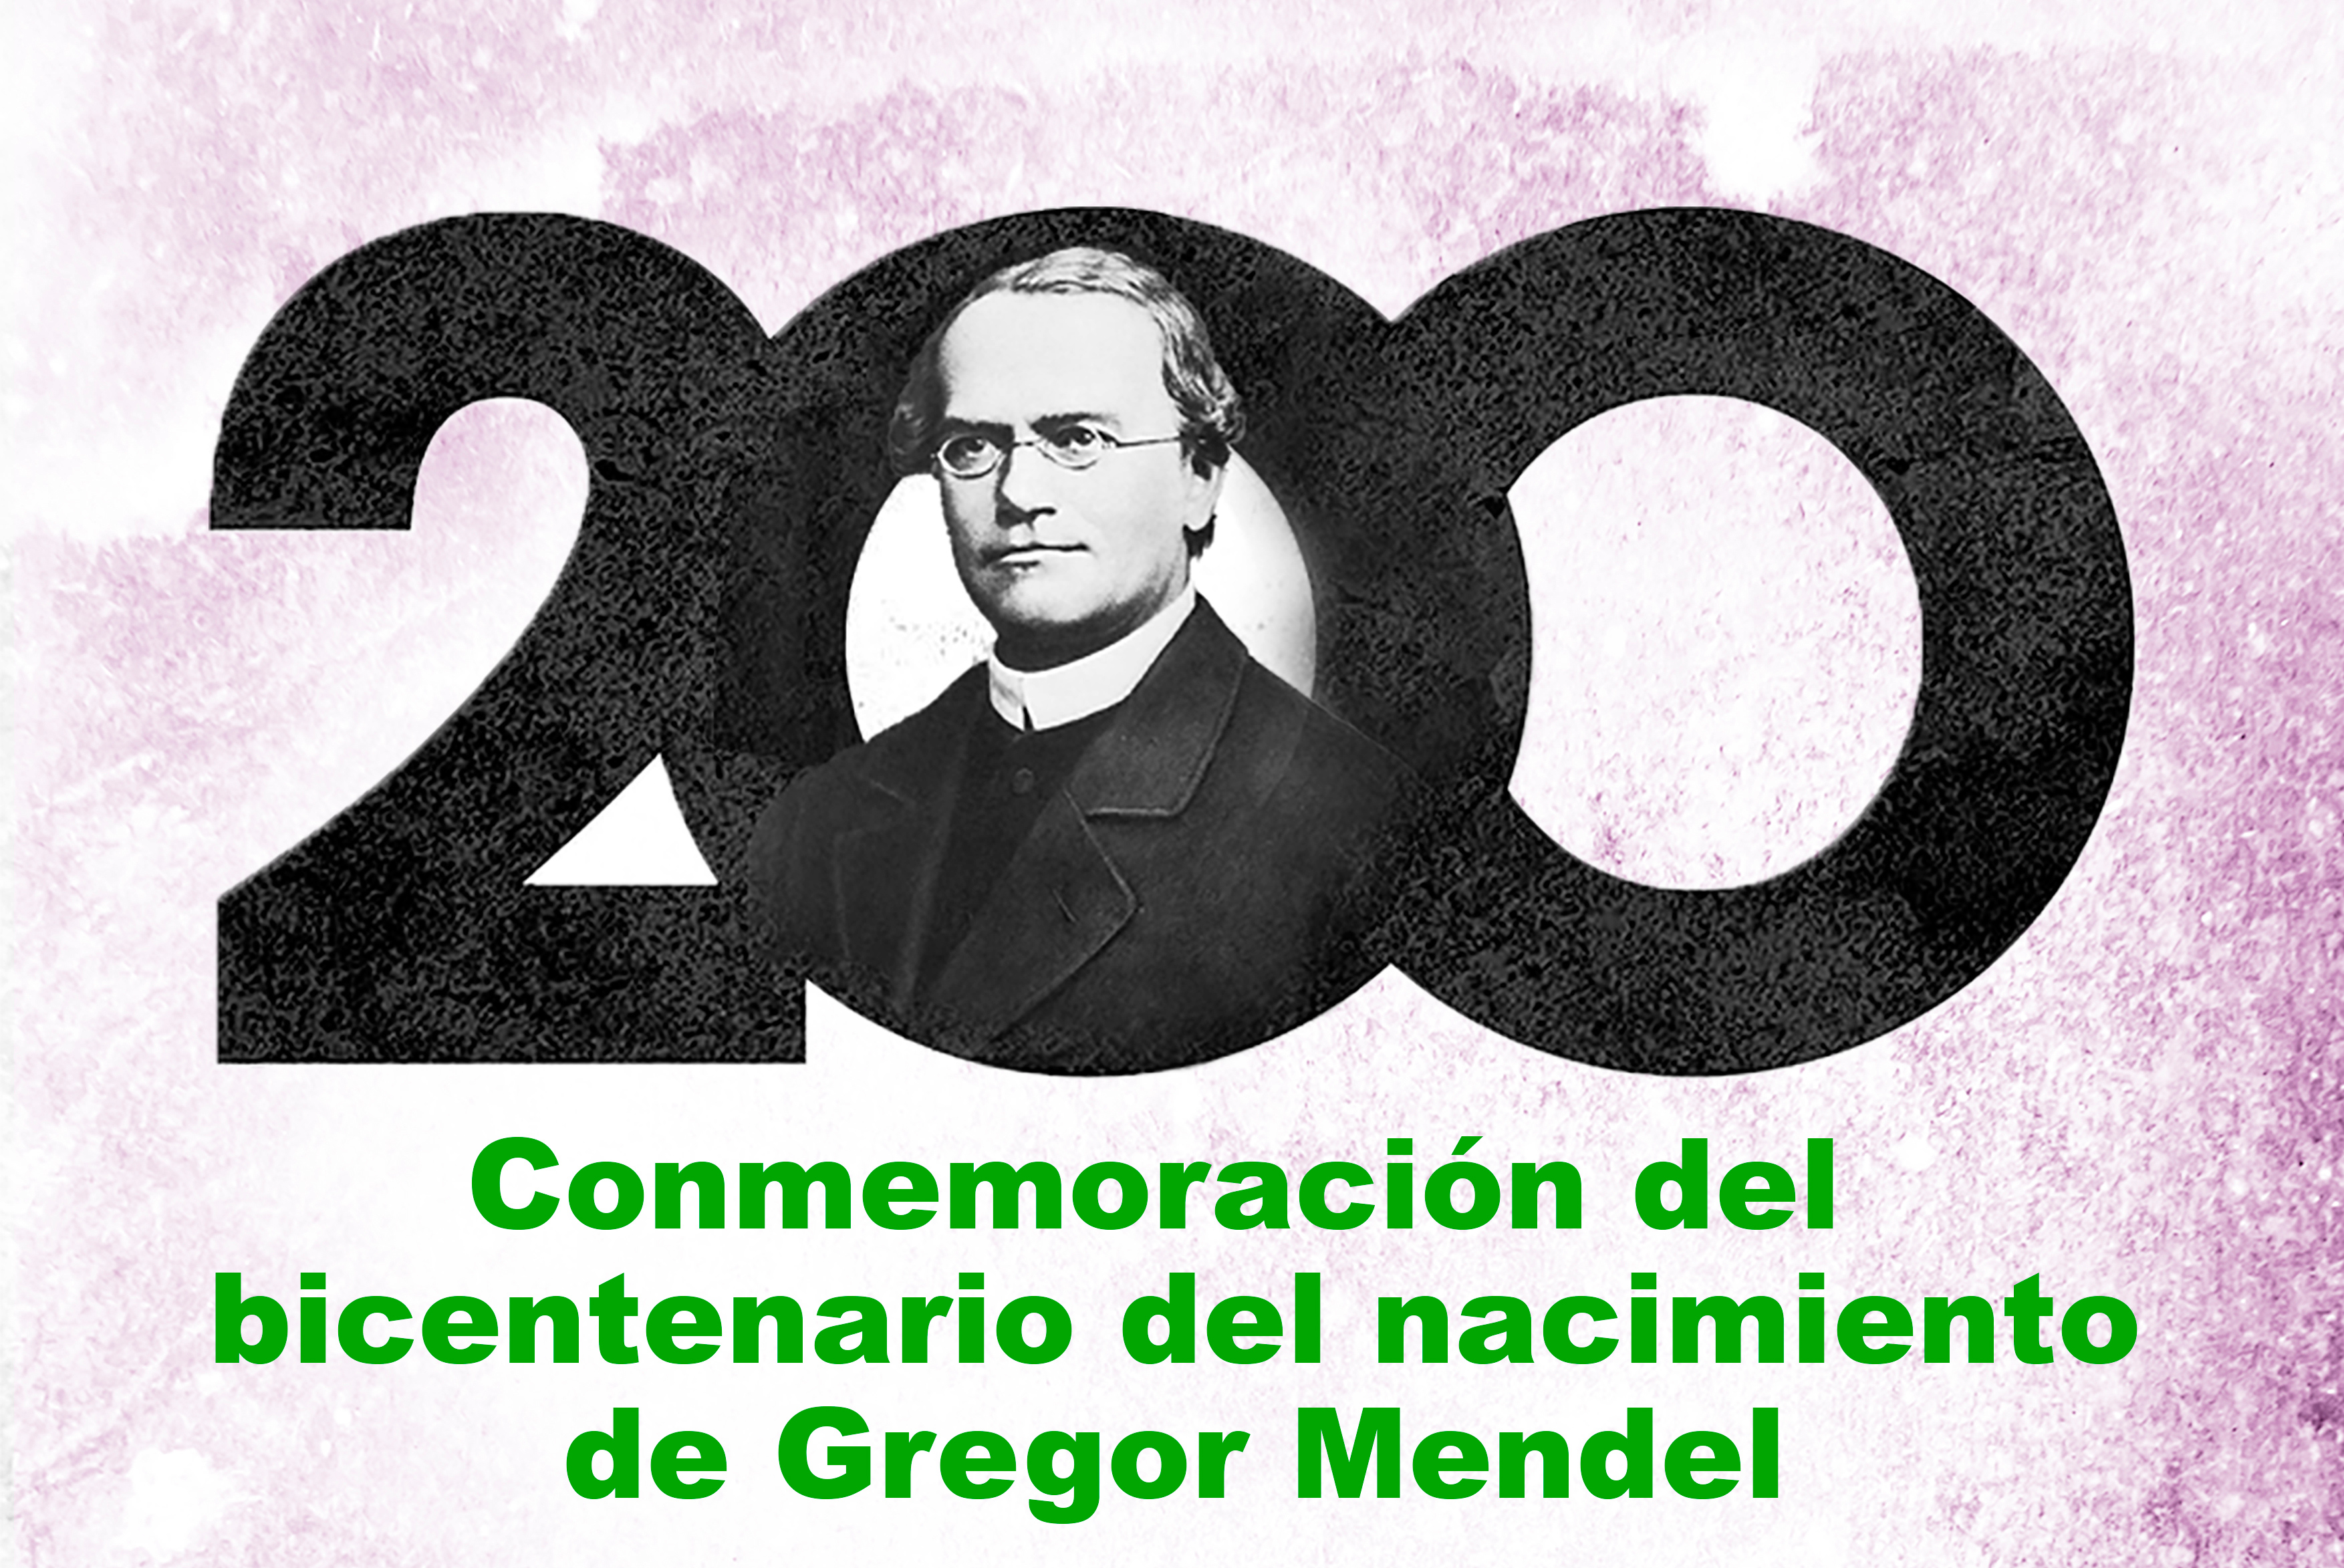 Conmemoración del Bicentenario del nacimiento de Gregor Mendel. 16 de diciembre. Salón de Actos